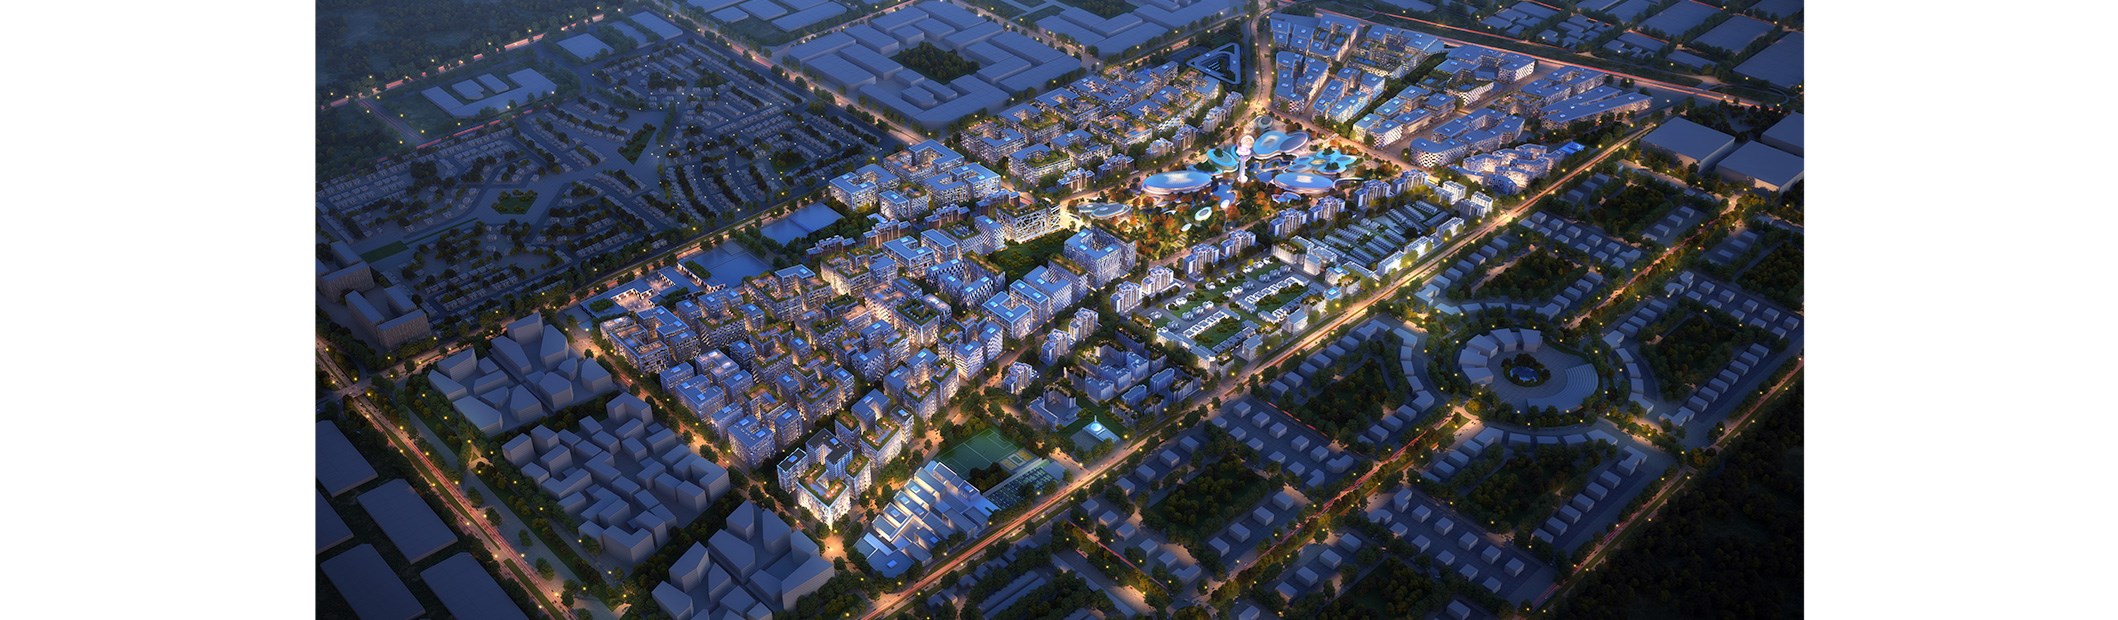 أرادَ تكشف اللثام عن رؤيتها التقدّمية للمدن الذكية ضمن مشروع الجادة؛ أحدث وجهة عصريّة متكاملة في دولة الإمارات